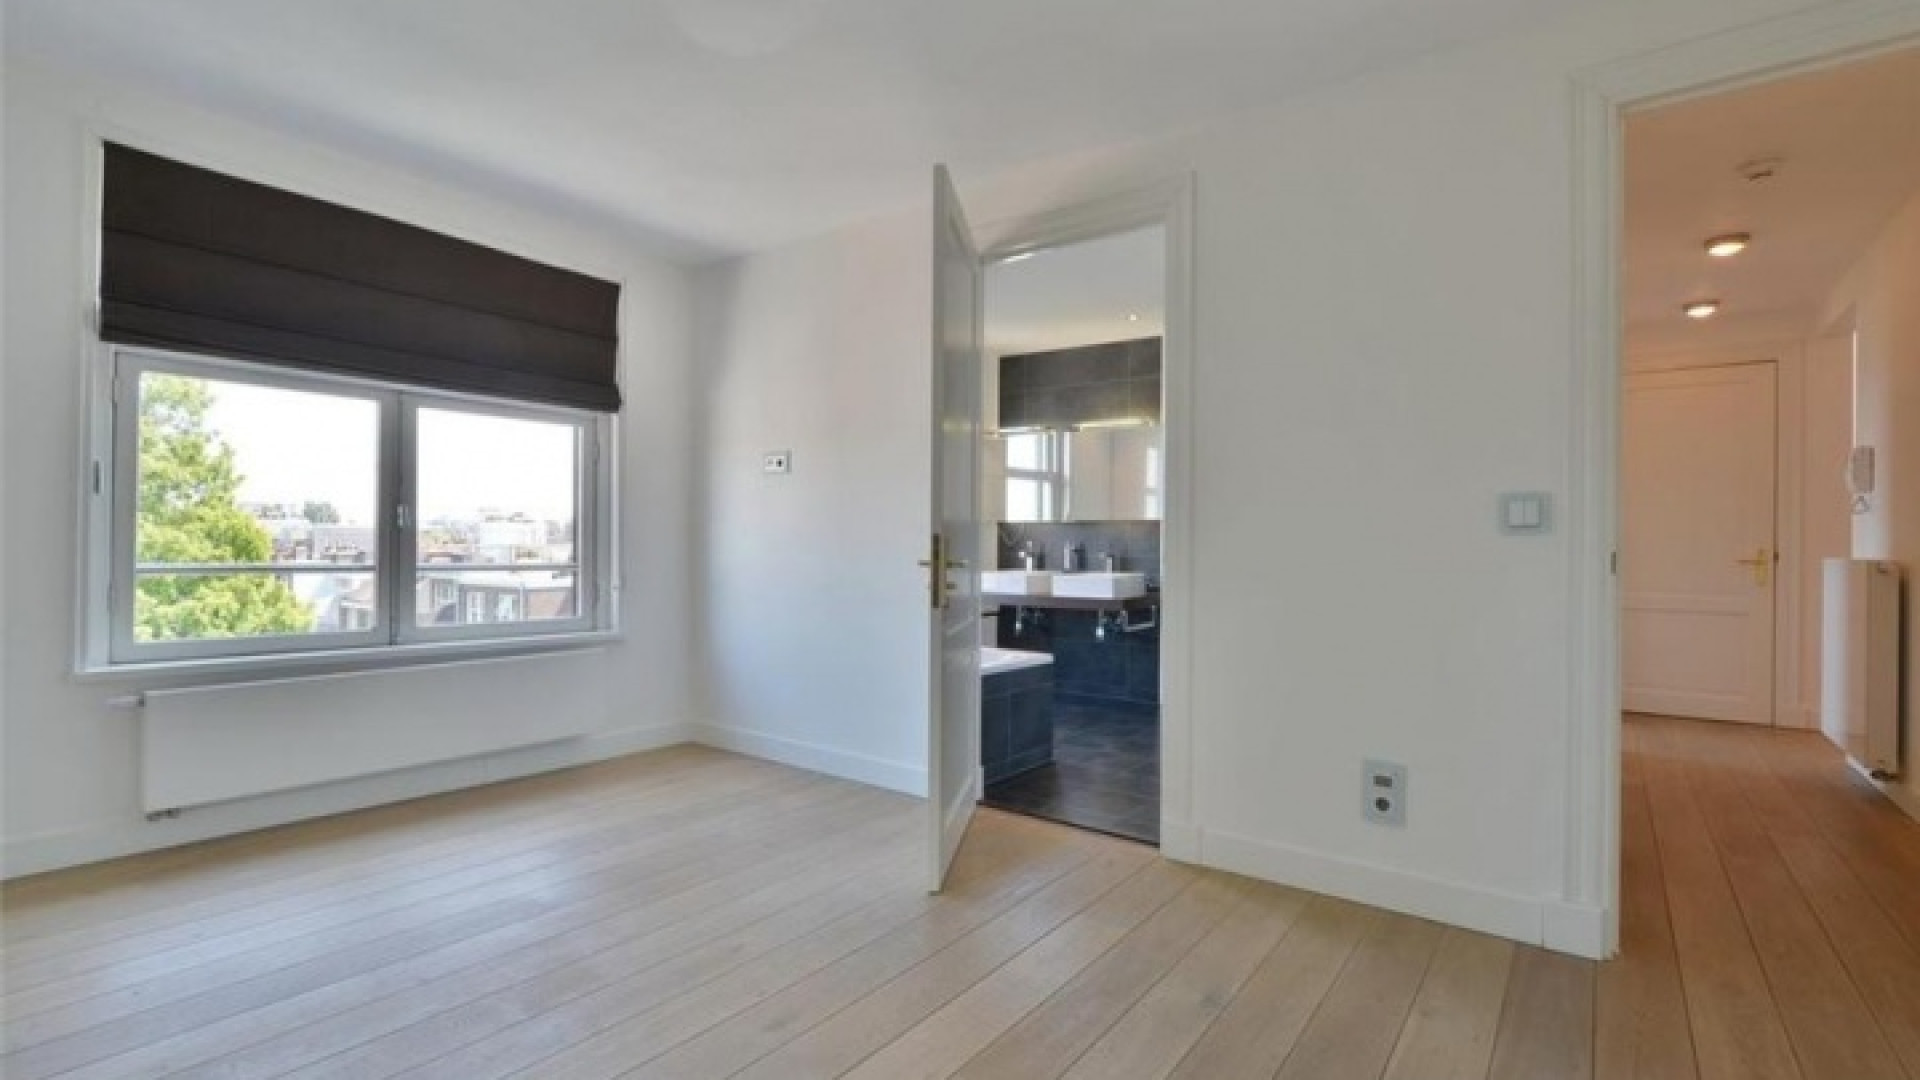 Frank Rijkaard vindt huurder voor dit zeer luxe appartement met jacuzzi op dakterras. Zie foto's 23